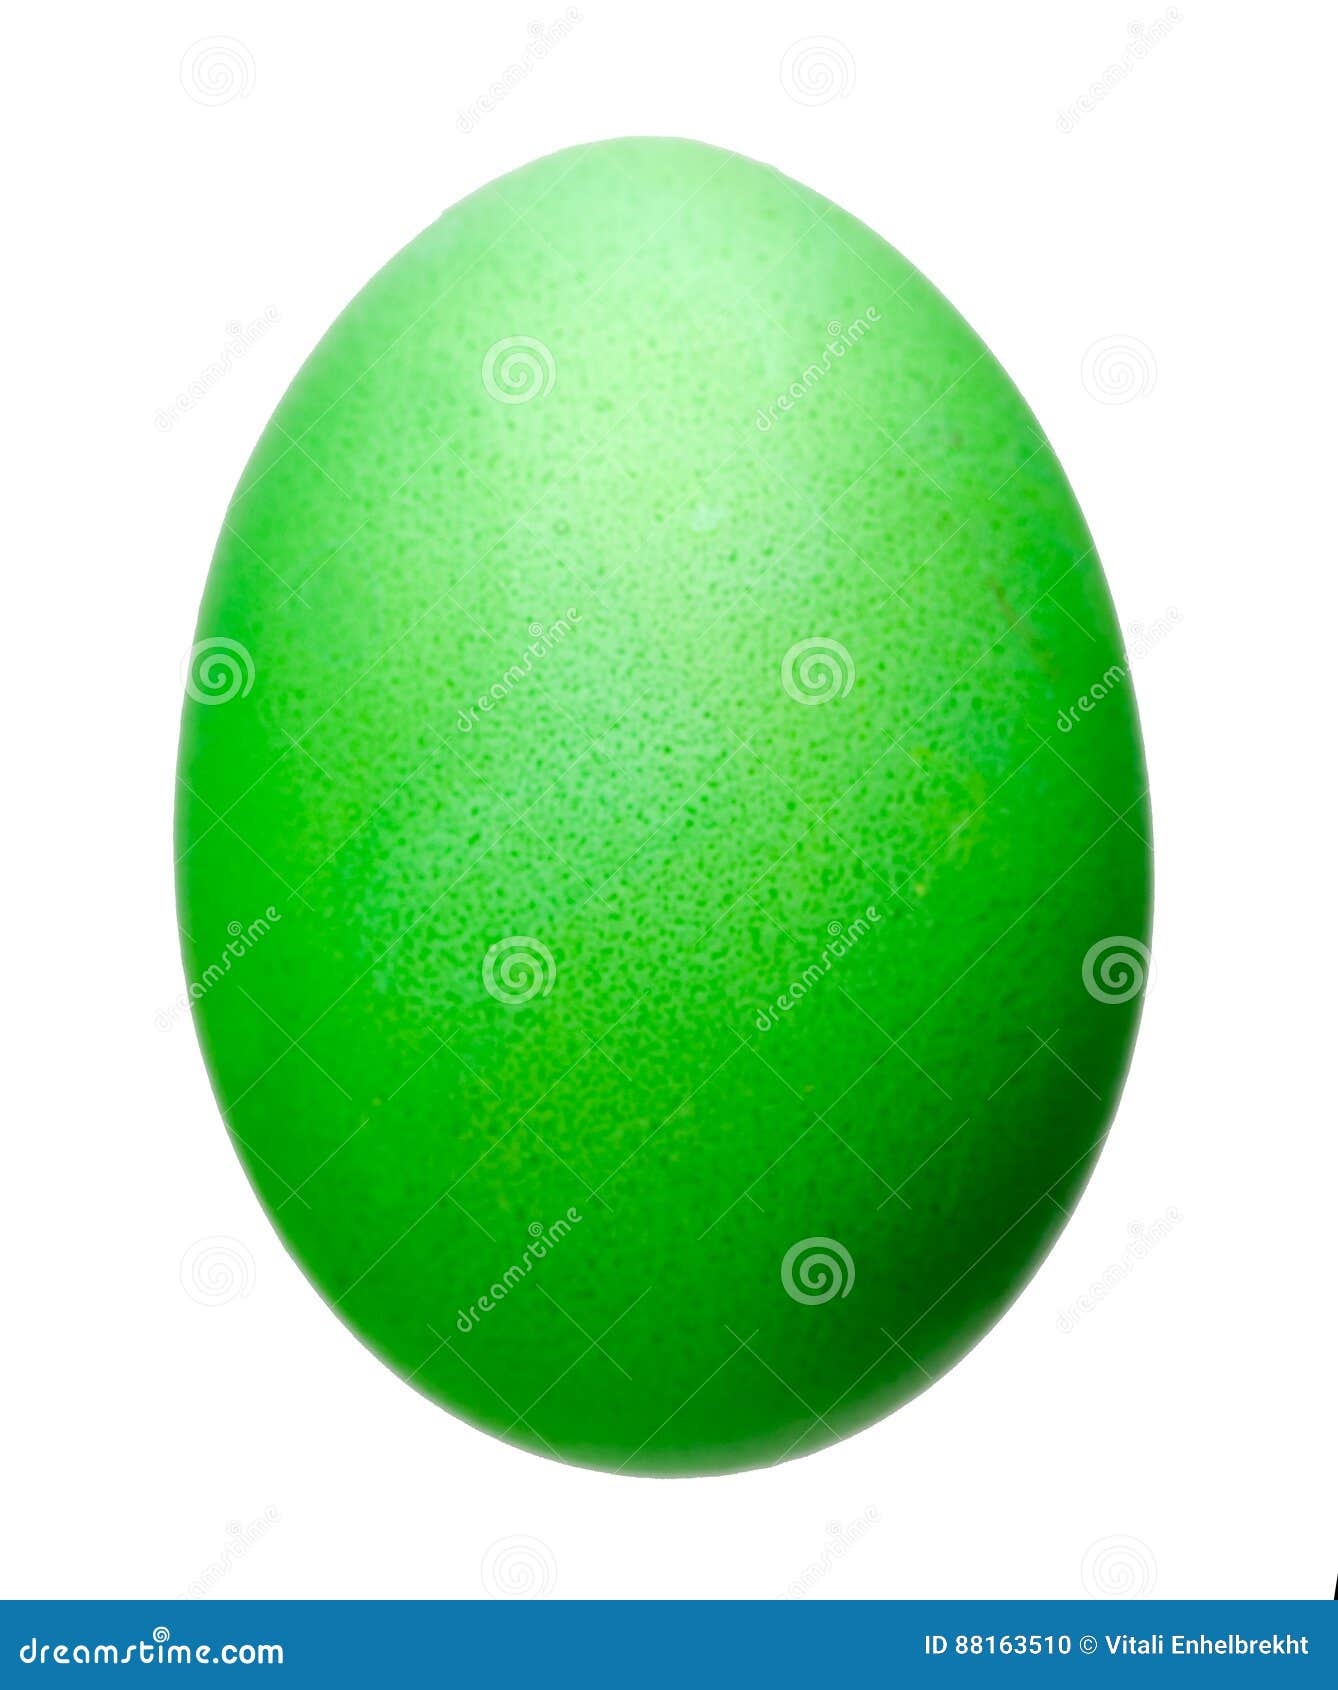 Tła Easter jajka ilustracja odizolowywający wektorowy biel Wielkanocnego jajka zielony kolor Wielkanocnego jajka zakończenie